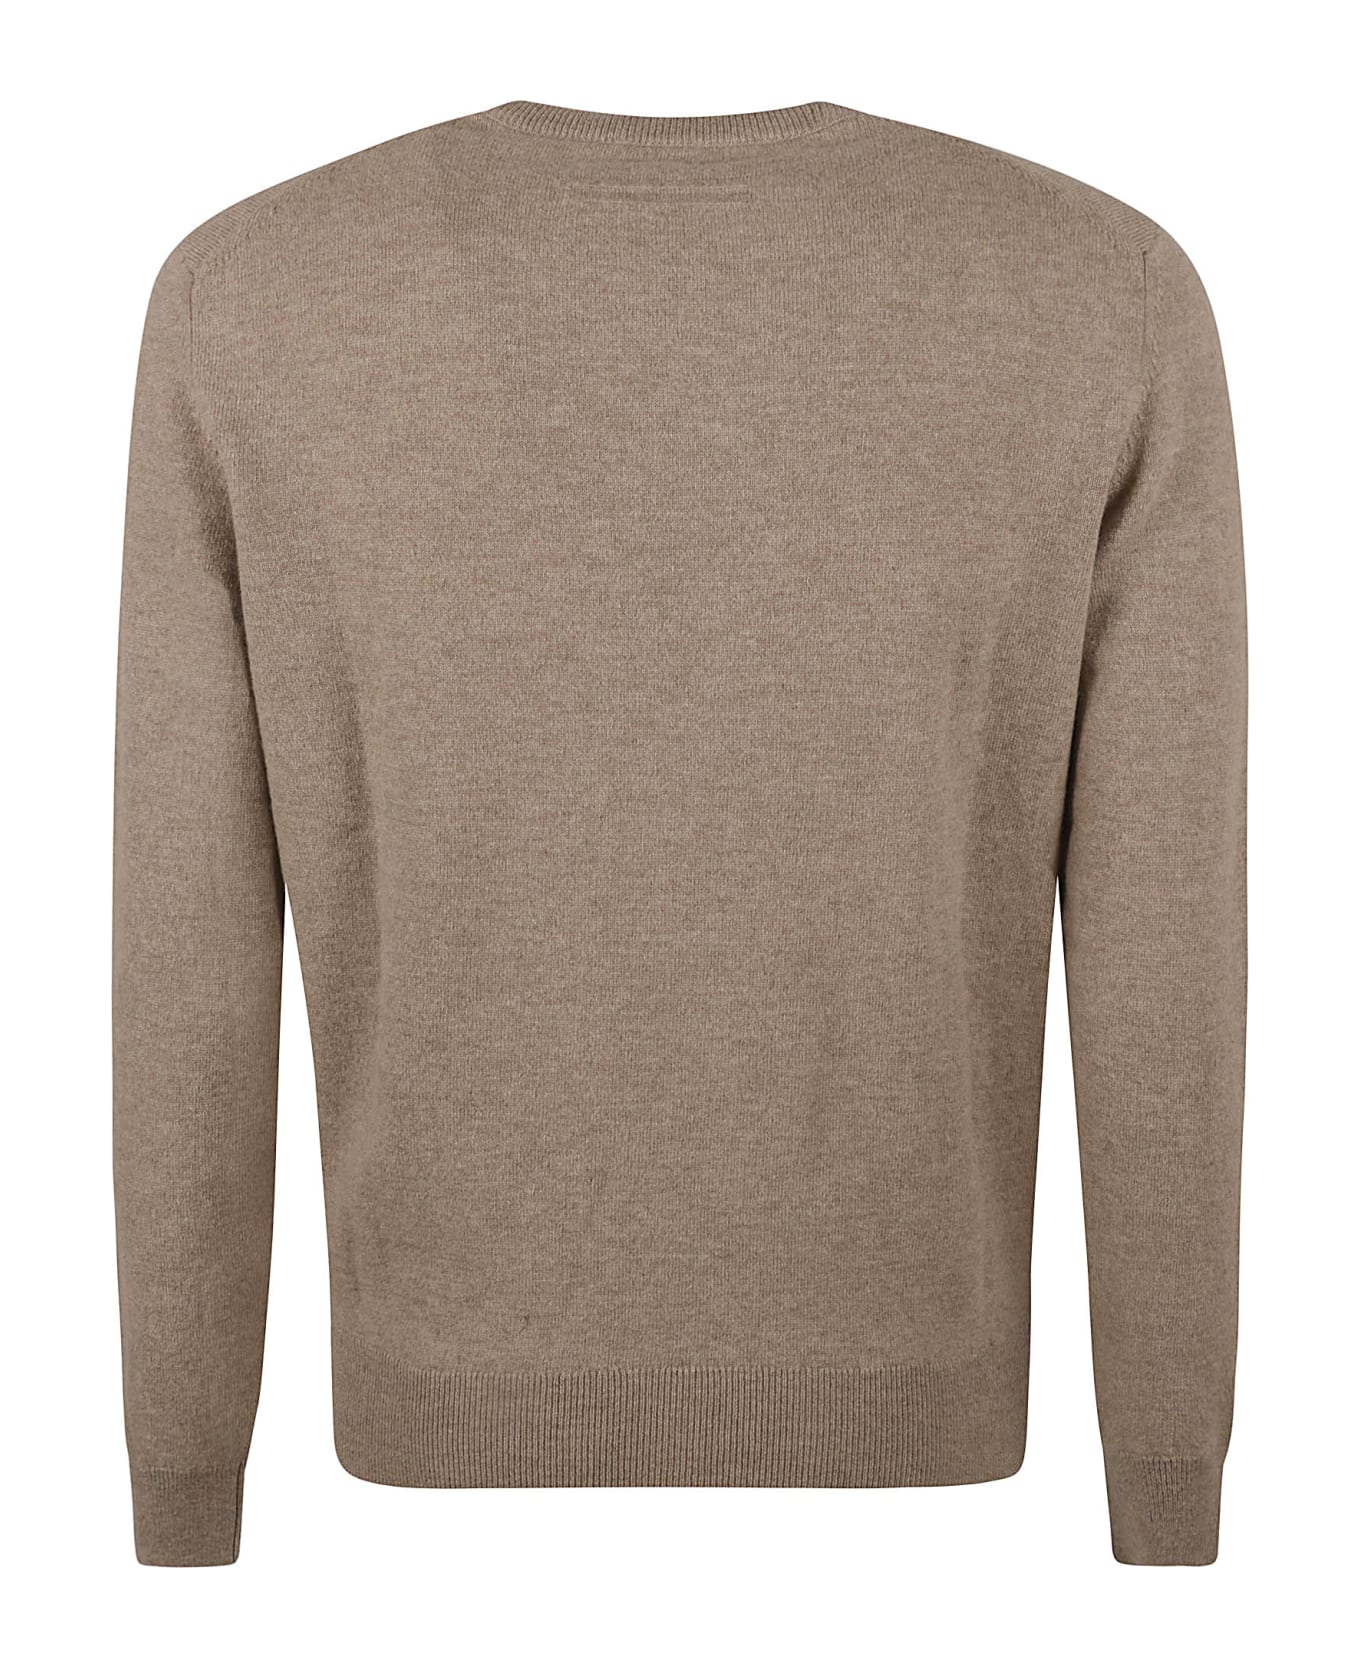 Zegna Round Neck Sweater - Beige